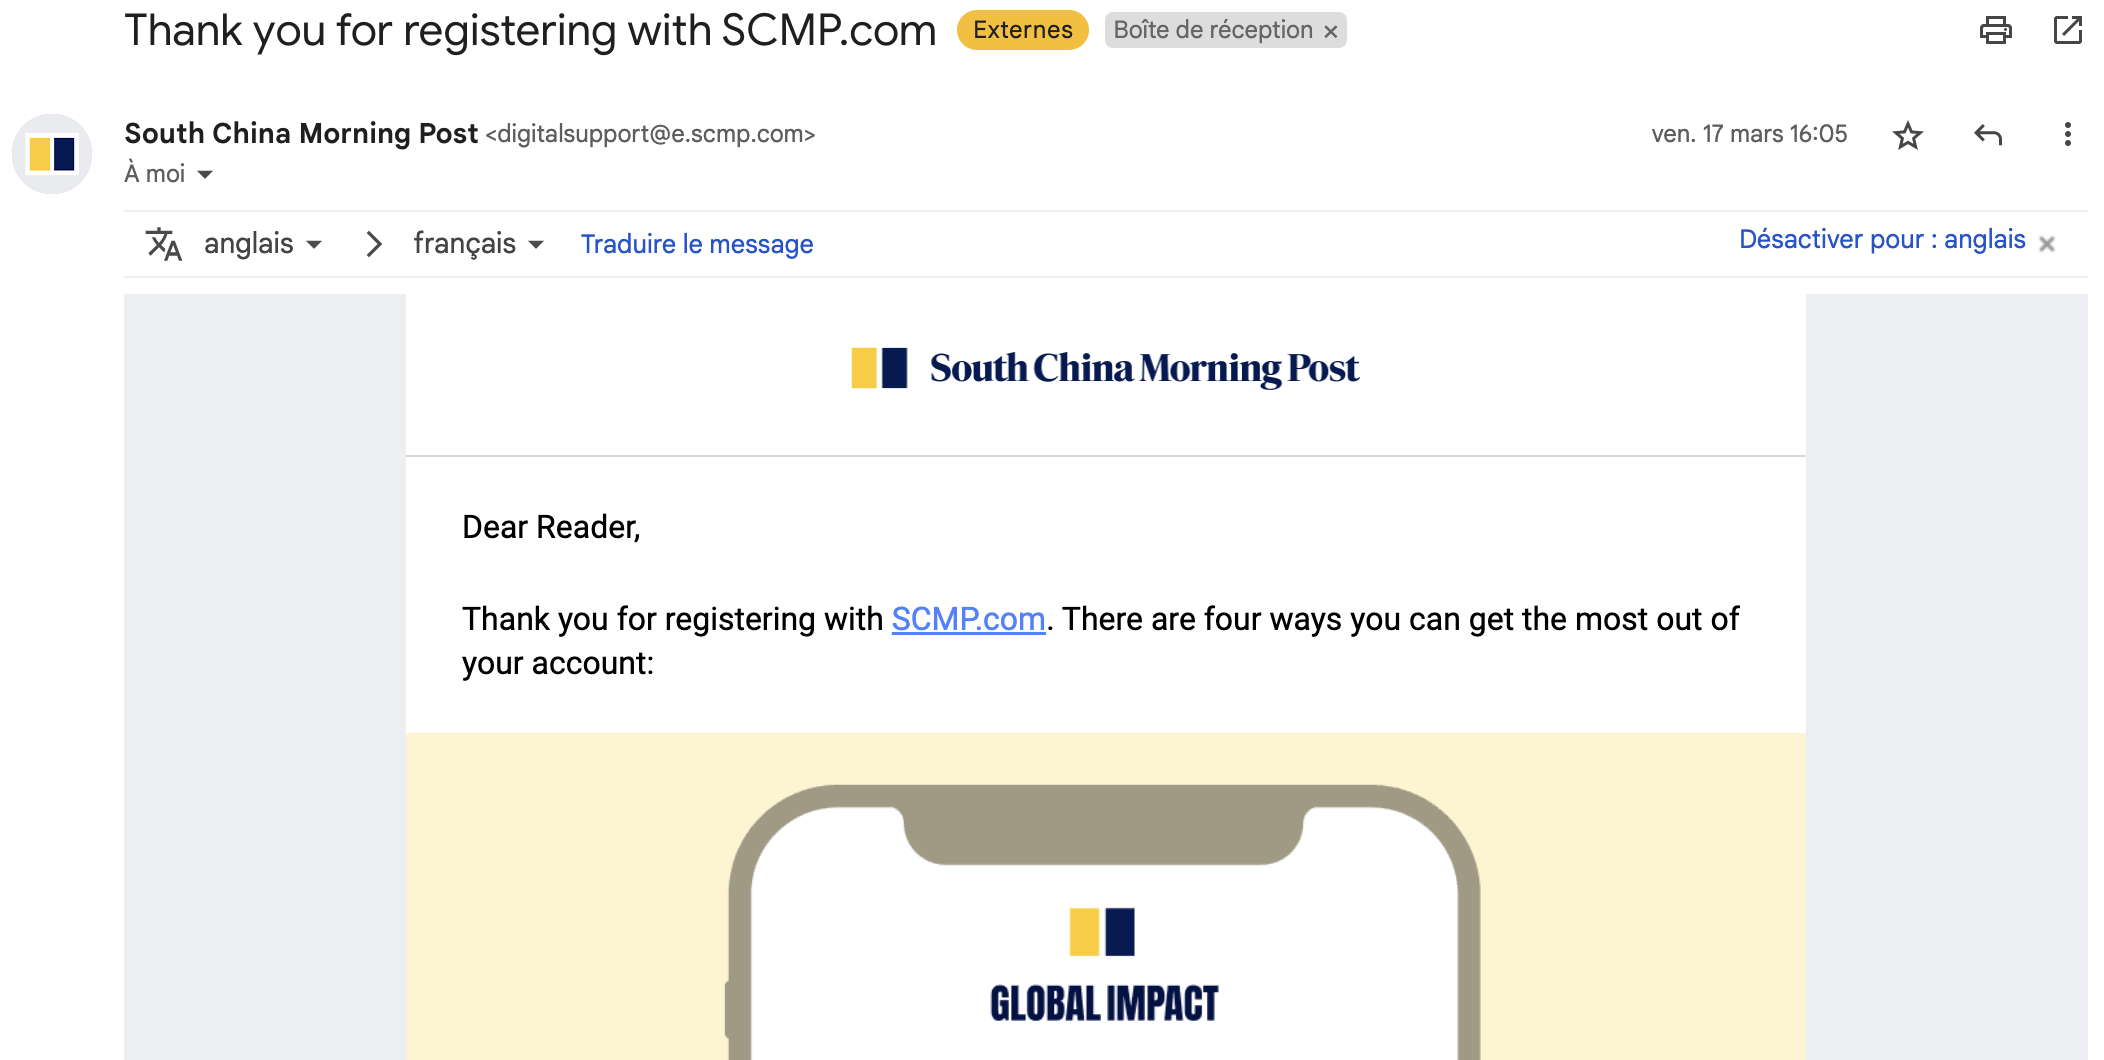 L'email d'accueil après l'inscription via un registration wall au South China Morning Post